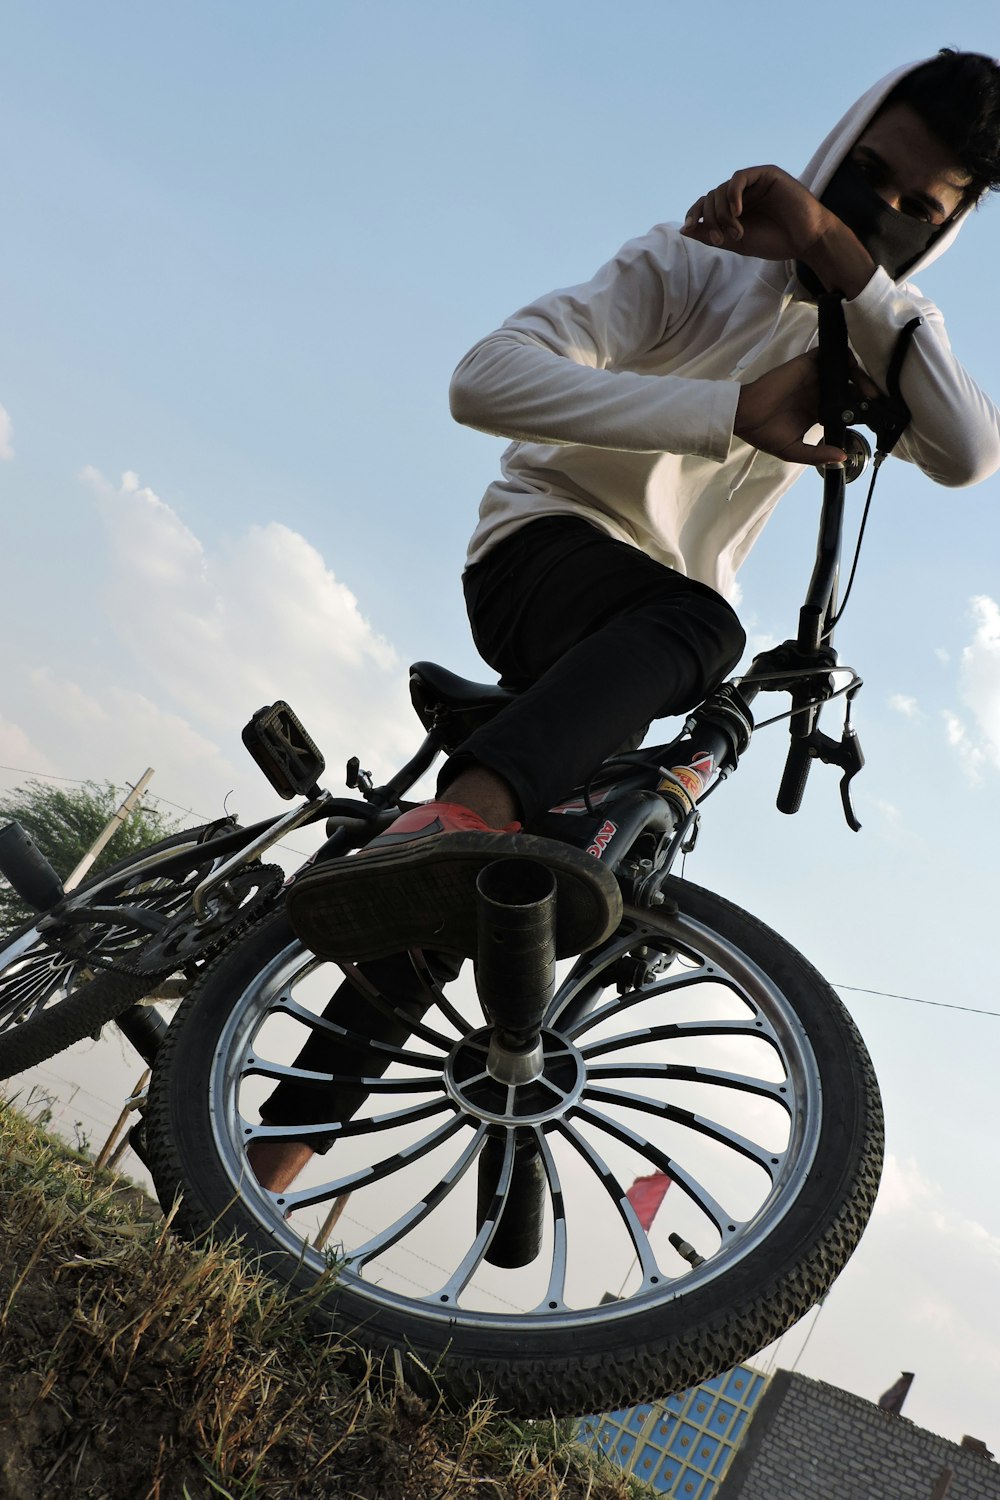 Ein Mann fährt mit dem Fahrrad auf einem grasbewachsenen Hügel